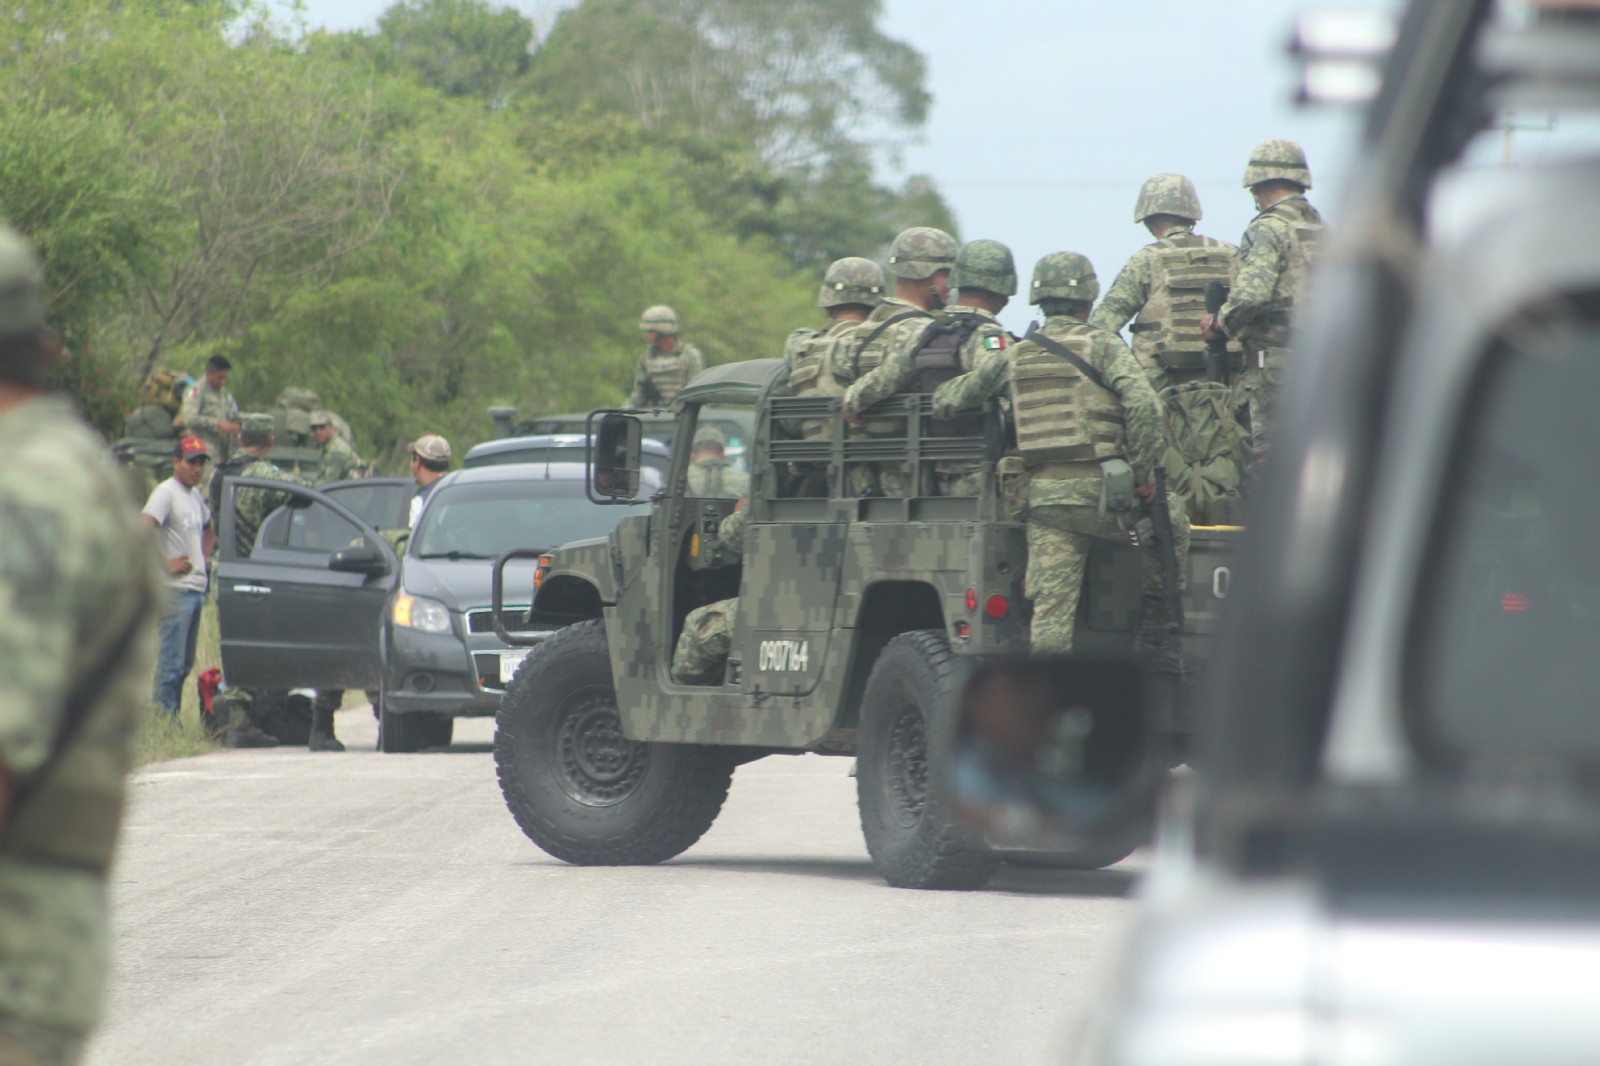 El presunto narcojet ingresó a tierras mexicanas y cruzó el Río Hondo a muy baja altura, y se perdió del radar de las militares